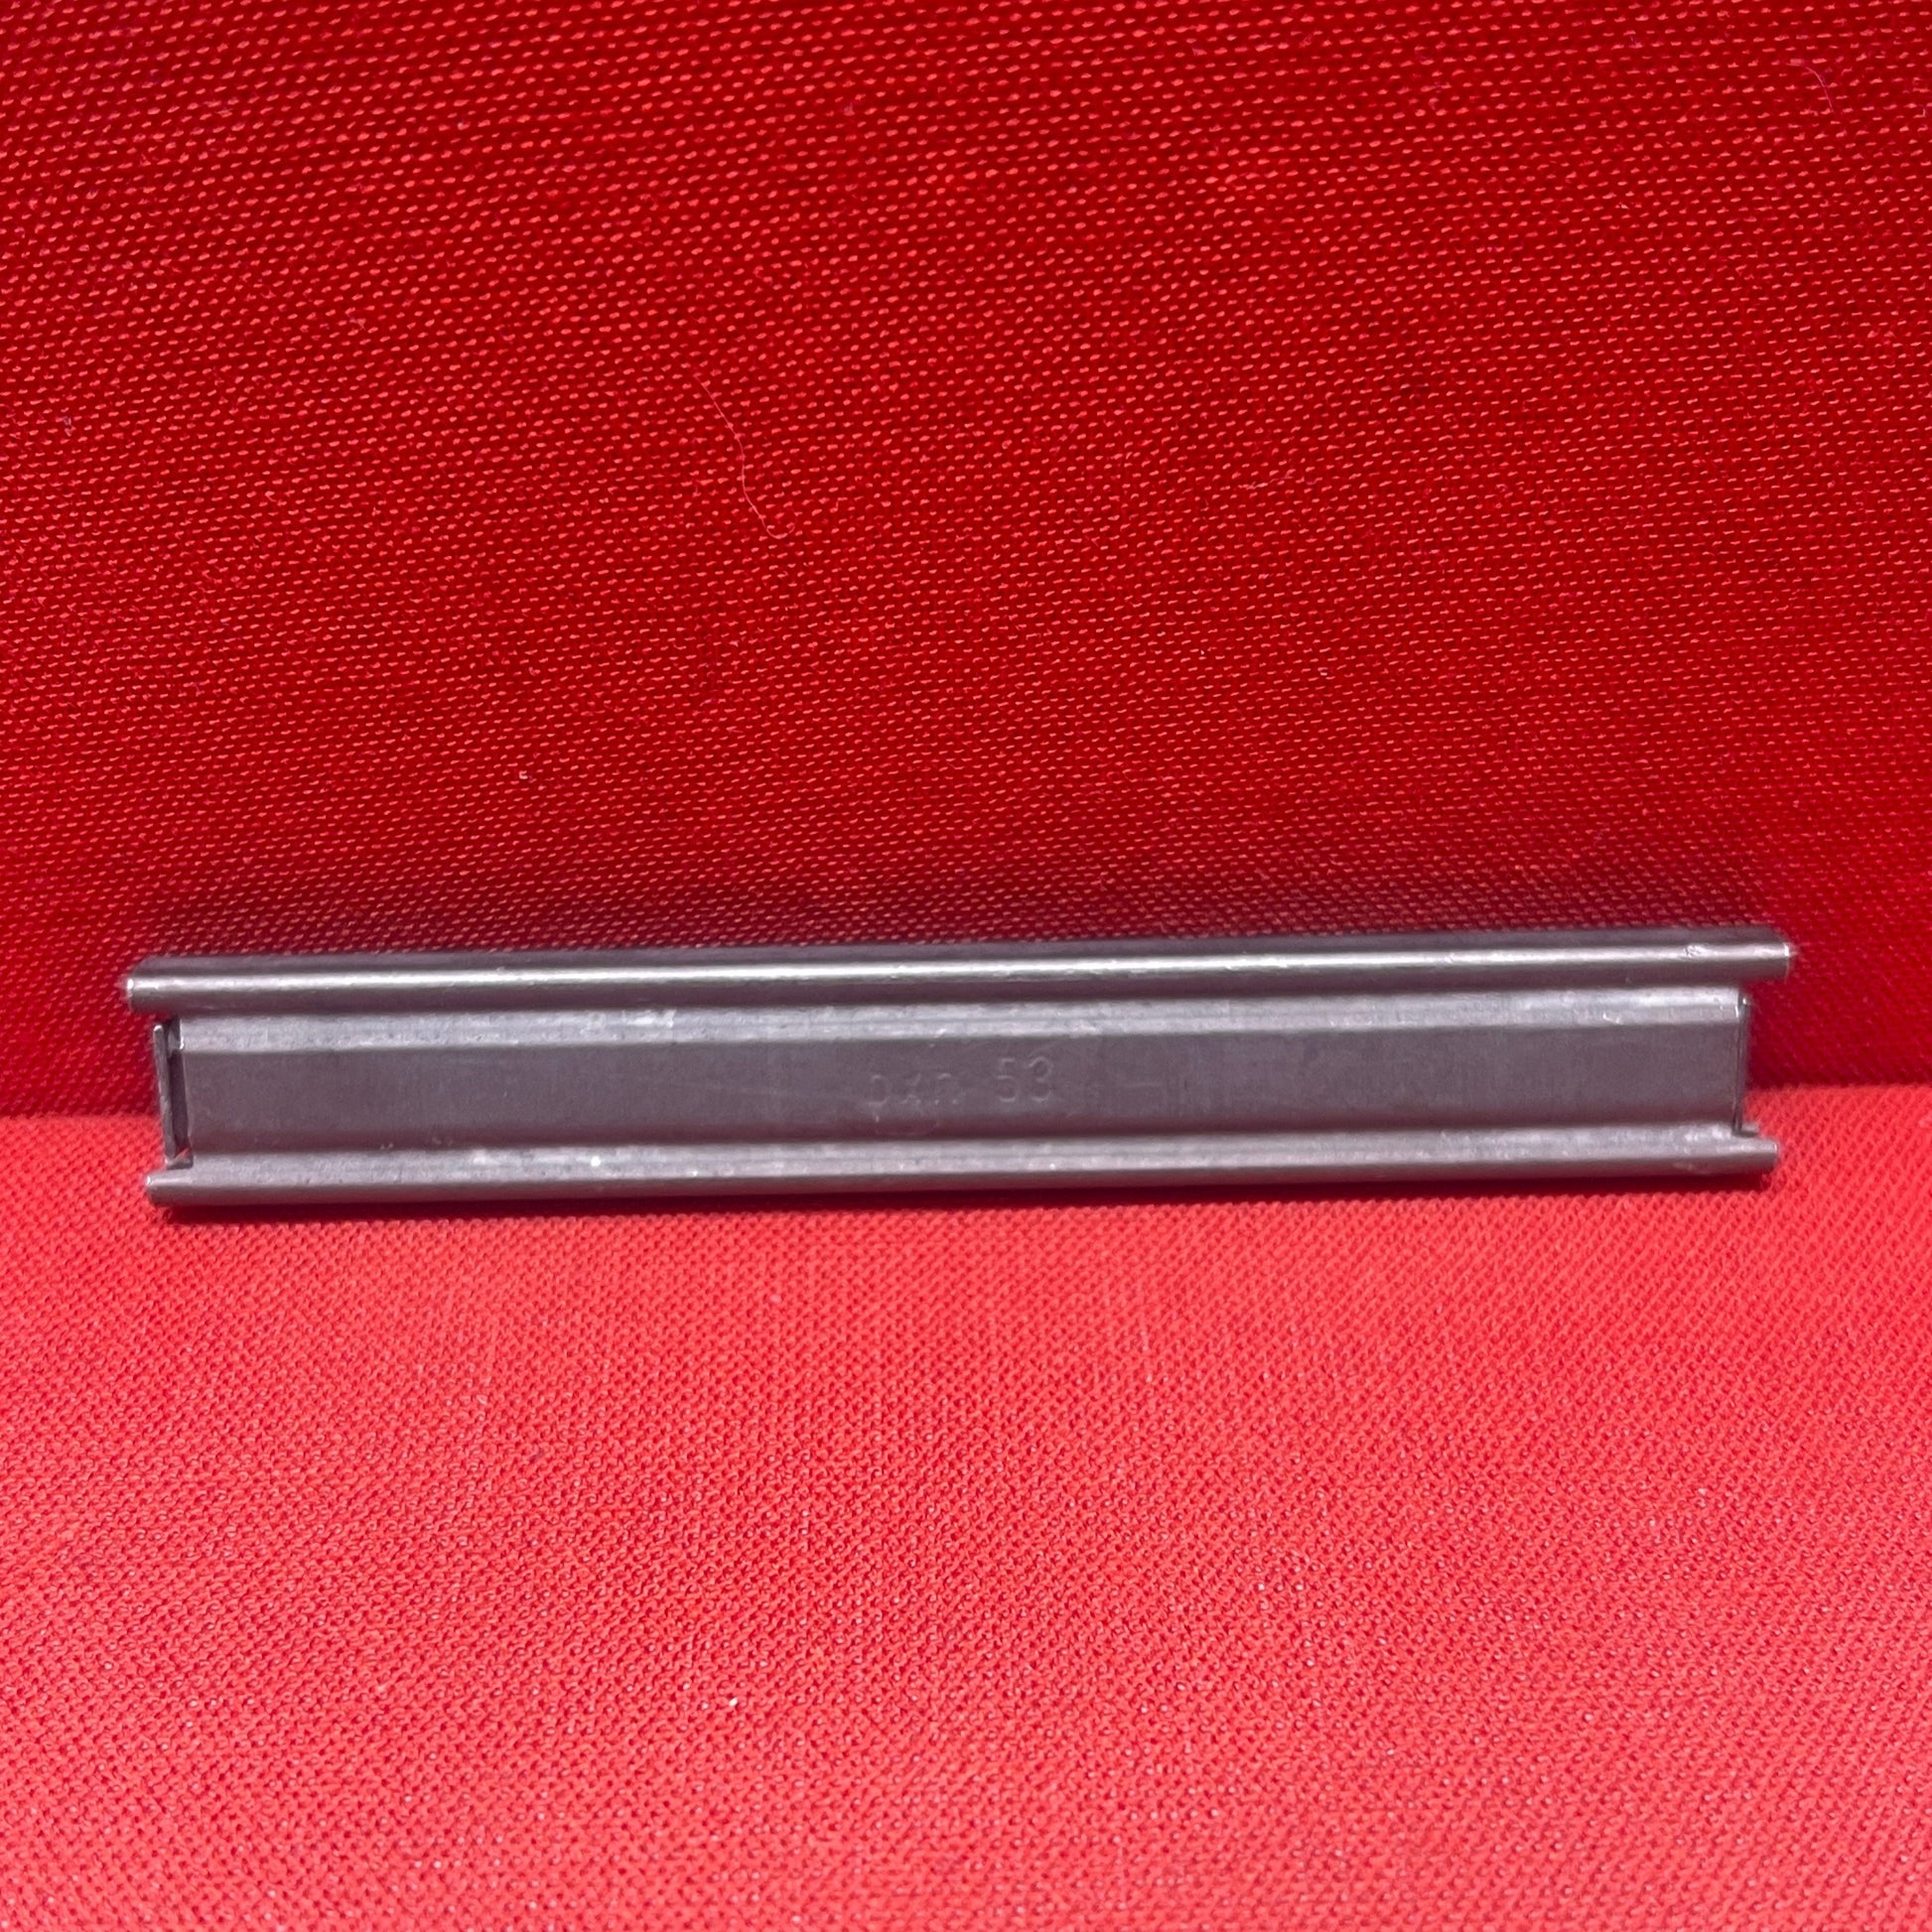 Czech 7,62/9mm stripper clips